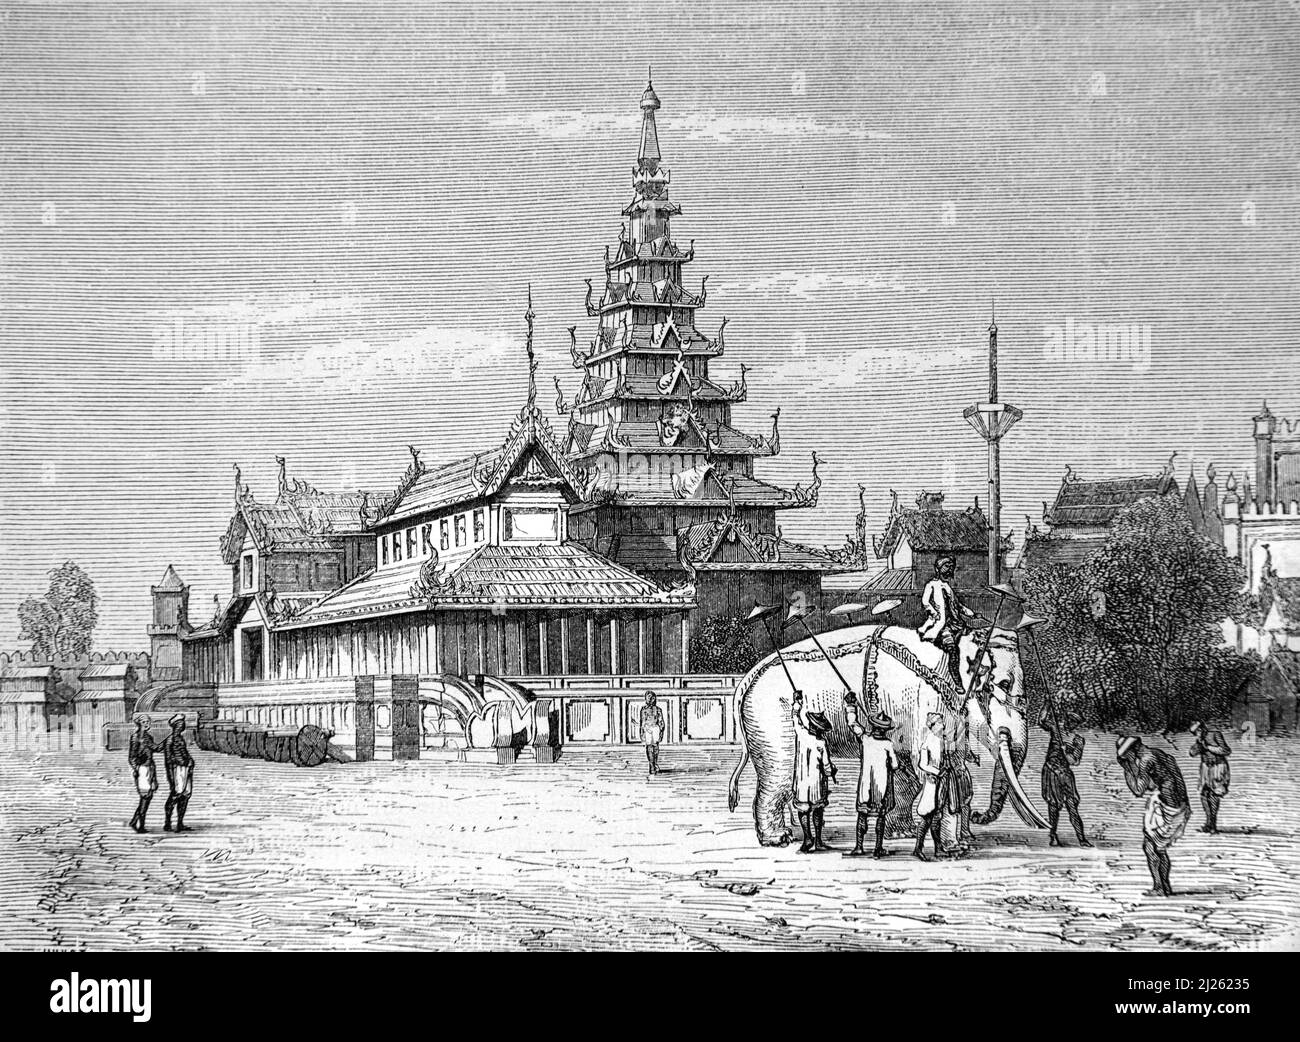 Éléphant blanc ou éléphant sacré au Palais Royal du Roi birman Bodawpaya, Amarapura, alias Ummerapoora, Mandalay, Birmanie ou Myanmar. Illustration ancienne ou gravure 1860. Banque D'Images